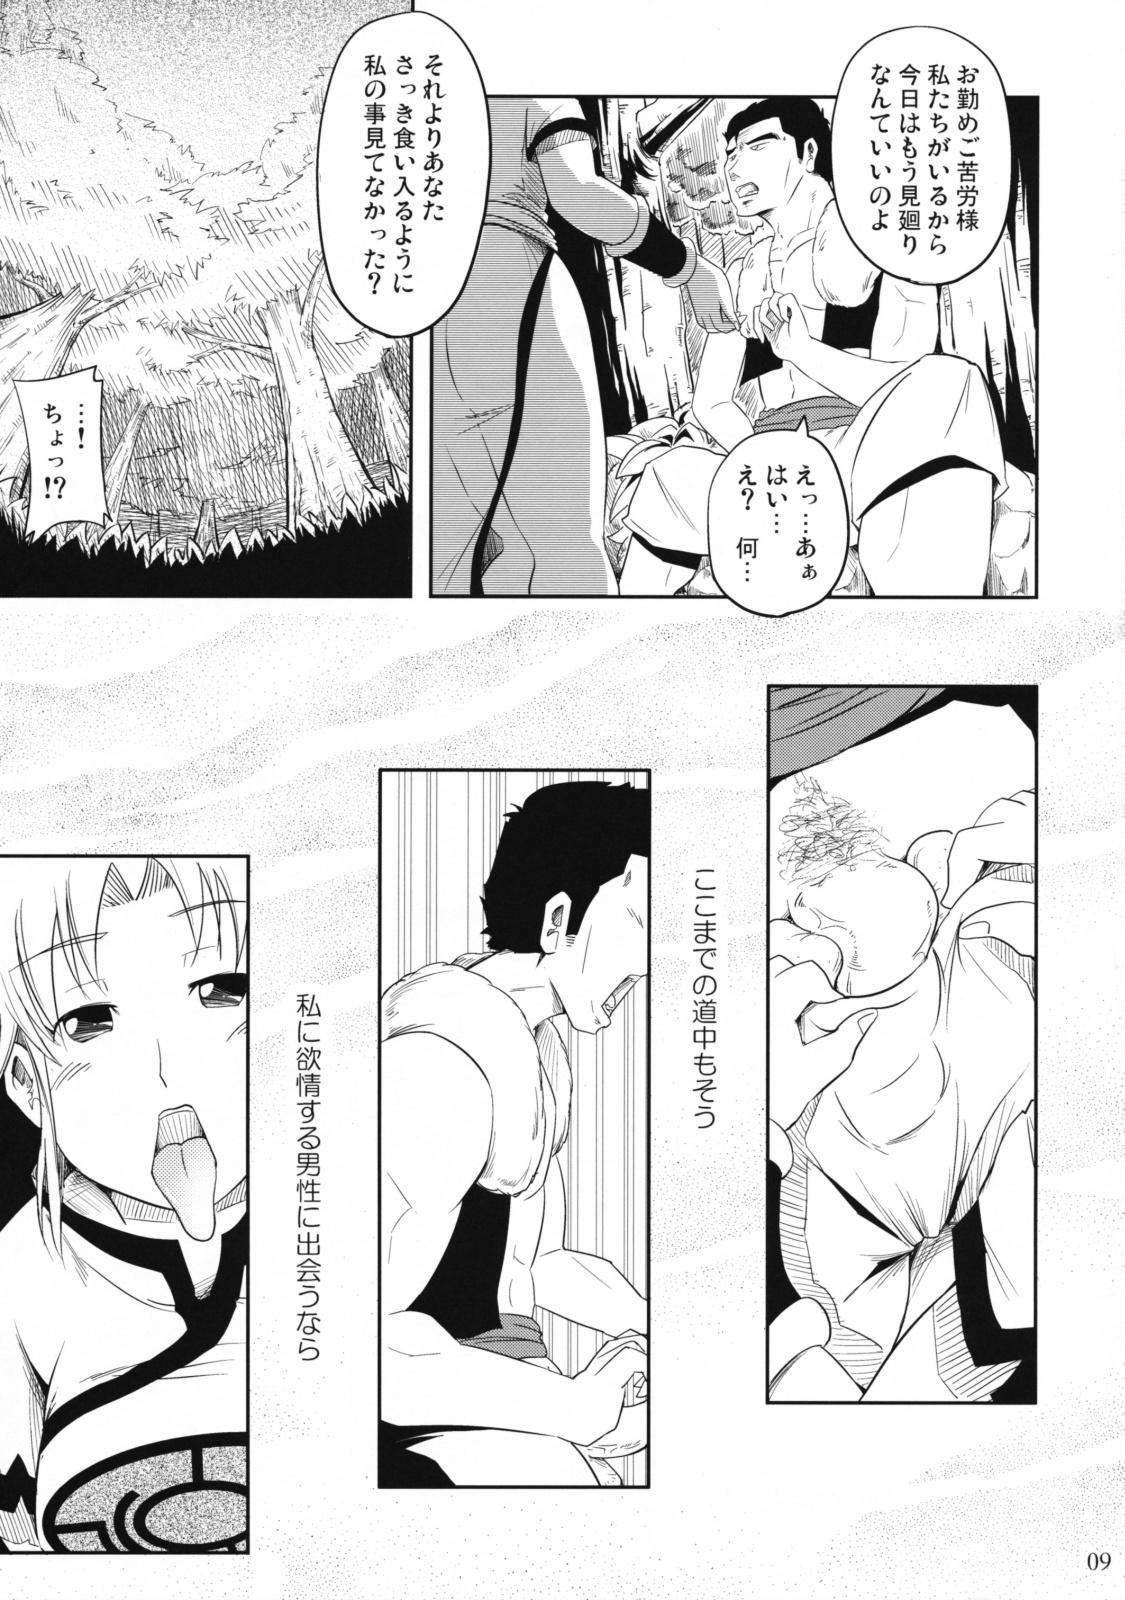 Pervs Jiai no Shouki - Dragon quest dai no daibouken Italiano - Page 9